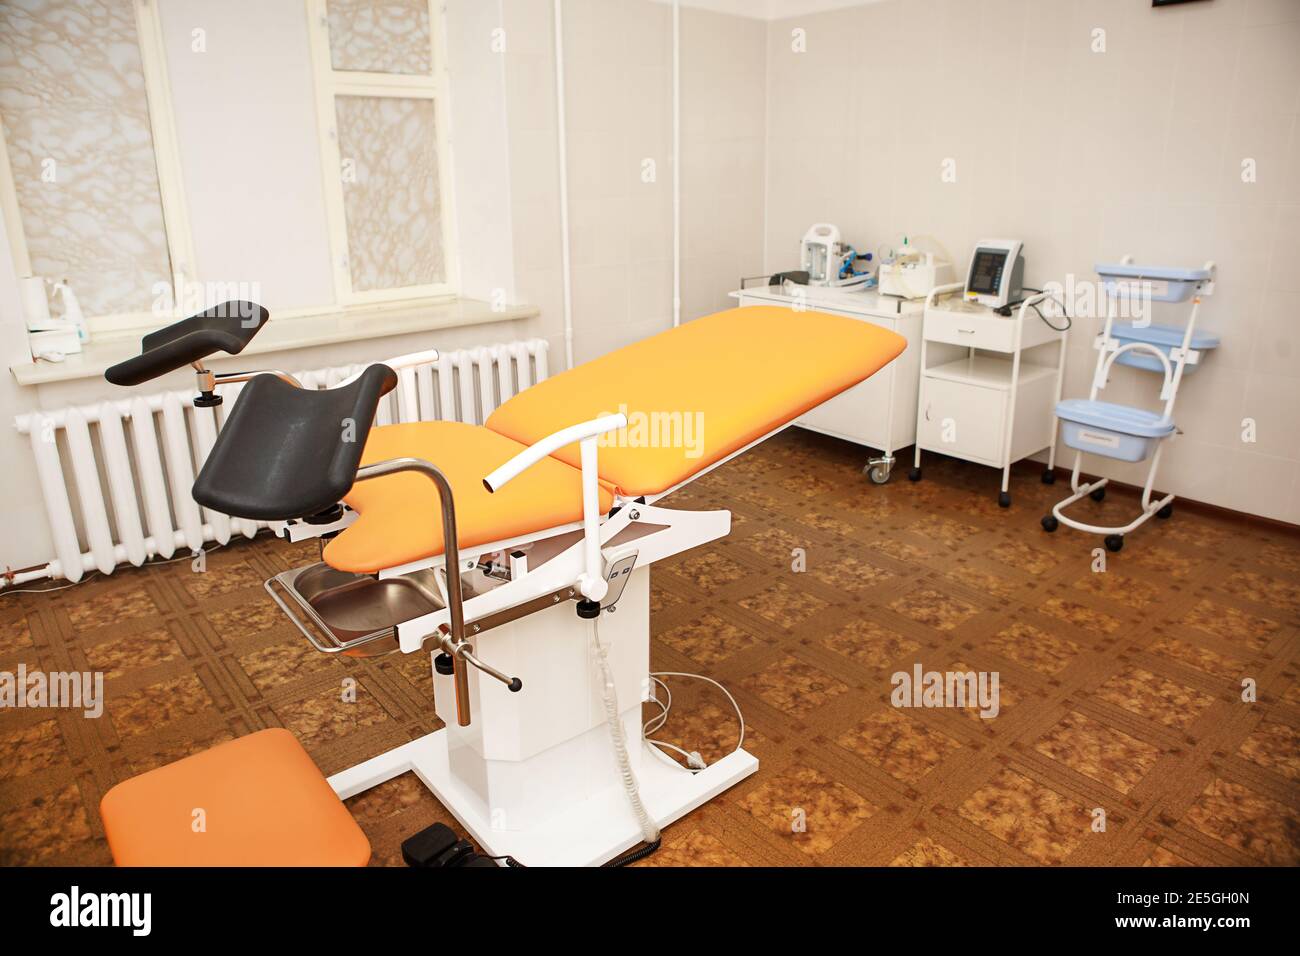 Gynäkologischer Stuhl in der Klinik für künstliche Befruchtung und Reproduktion von Frauen. Behandlungstisch und medizinische Geräte für die Untersuchung, Abschluss von p Stockfoto